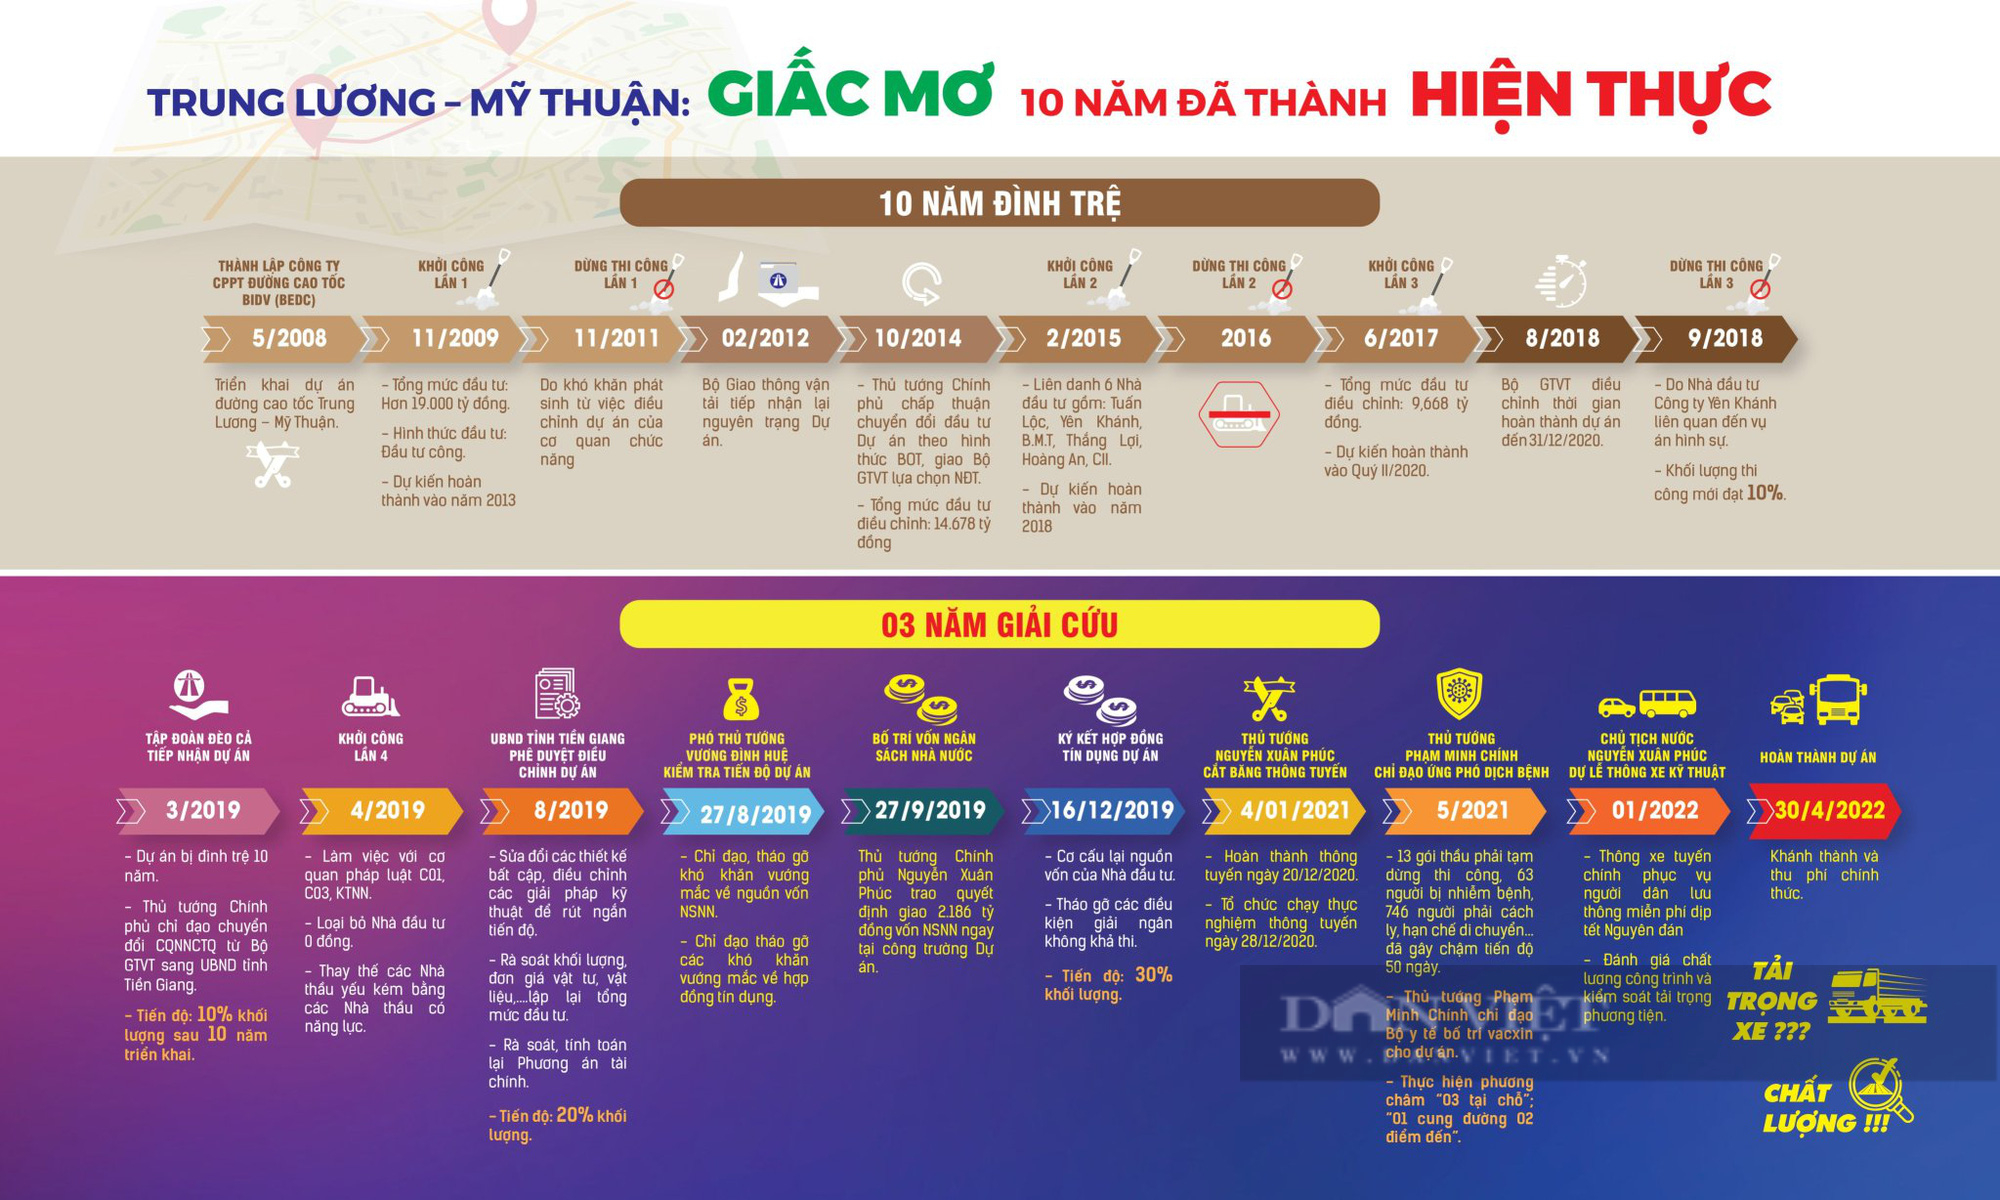 Thông xe kỹ thuật Dự án cao tốc Trung Lương - Mỹ Thuận trước Tết Nguyên đán 2022 - Ảnh 1.